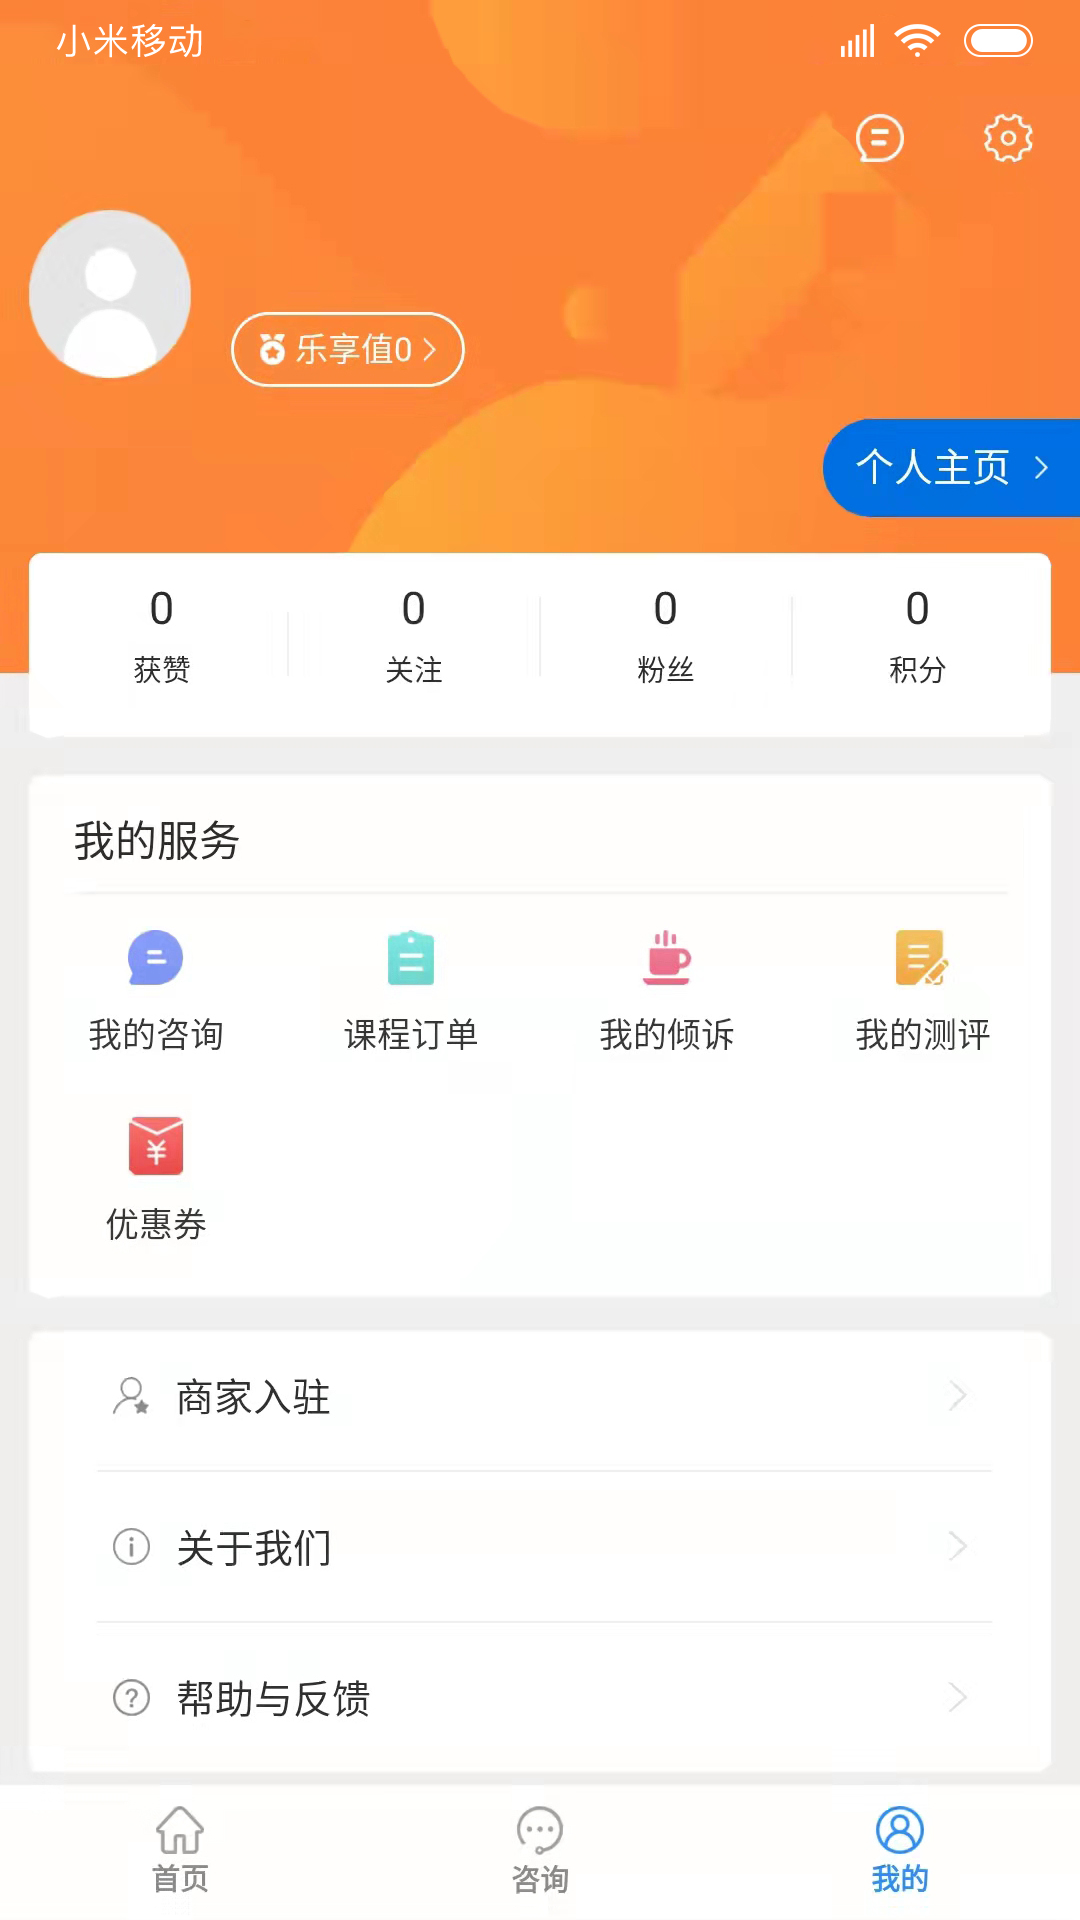 乐天心晴心理咨询-乐天心晴app下载v2.8.9 安卓版